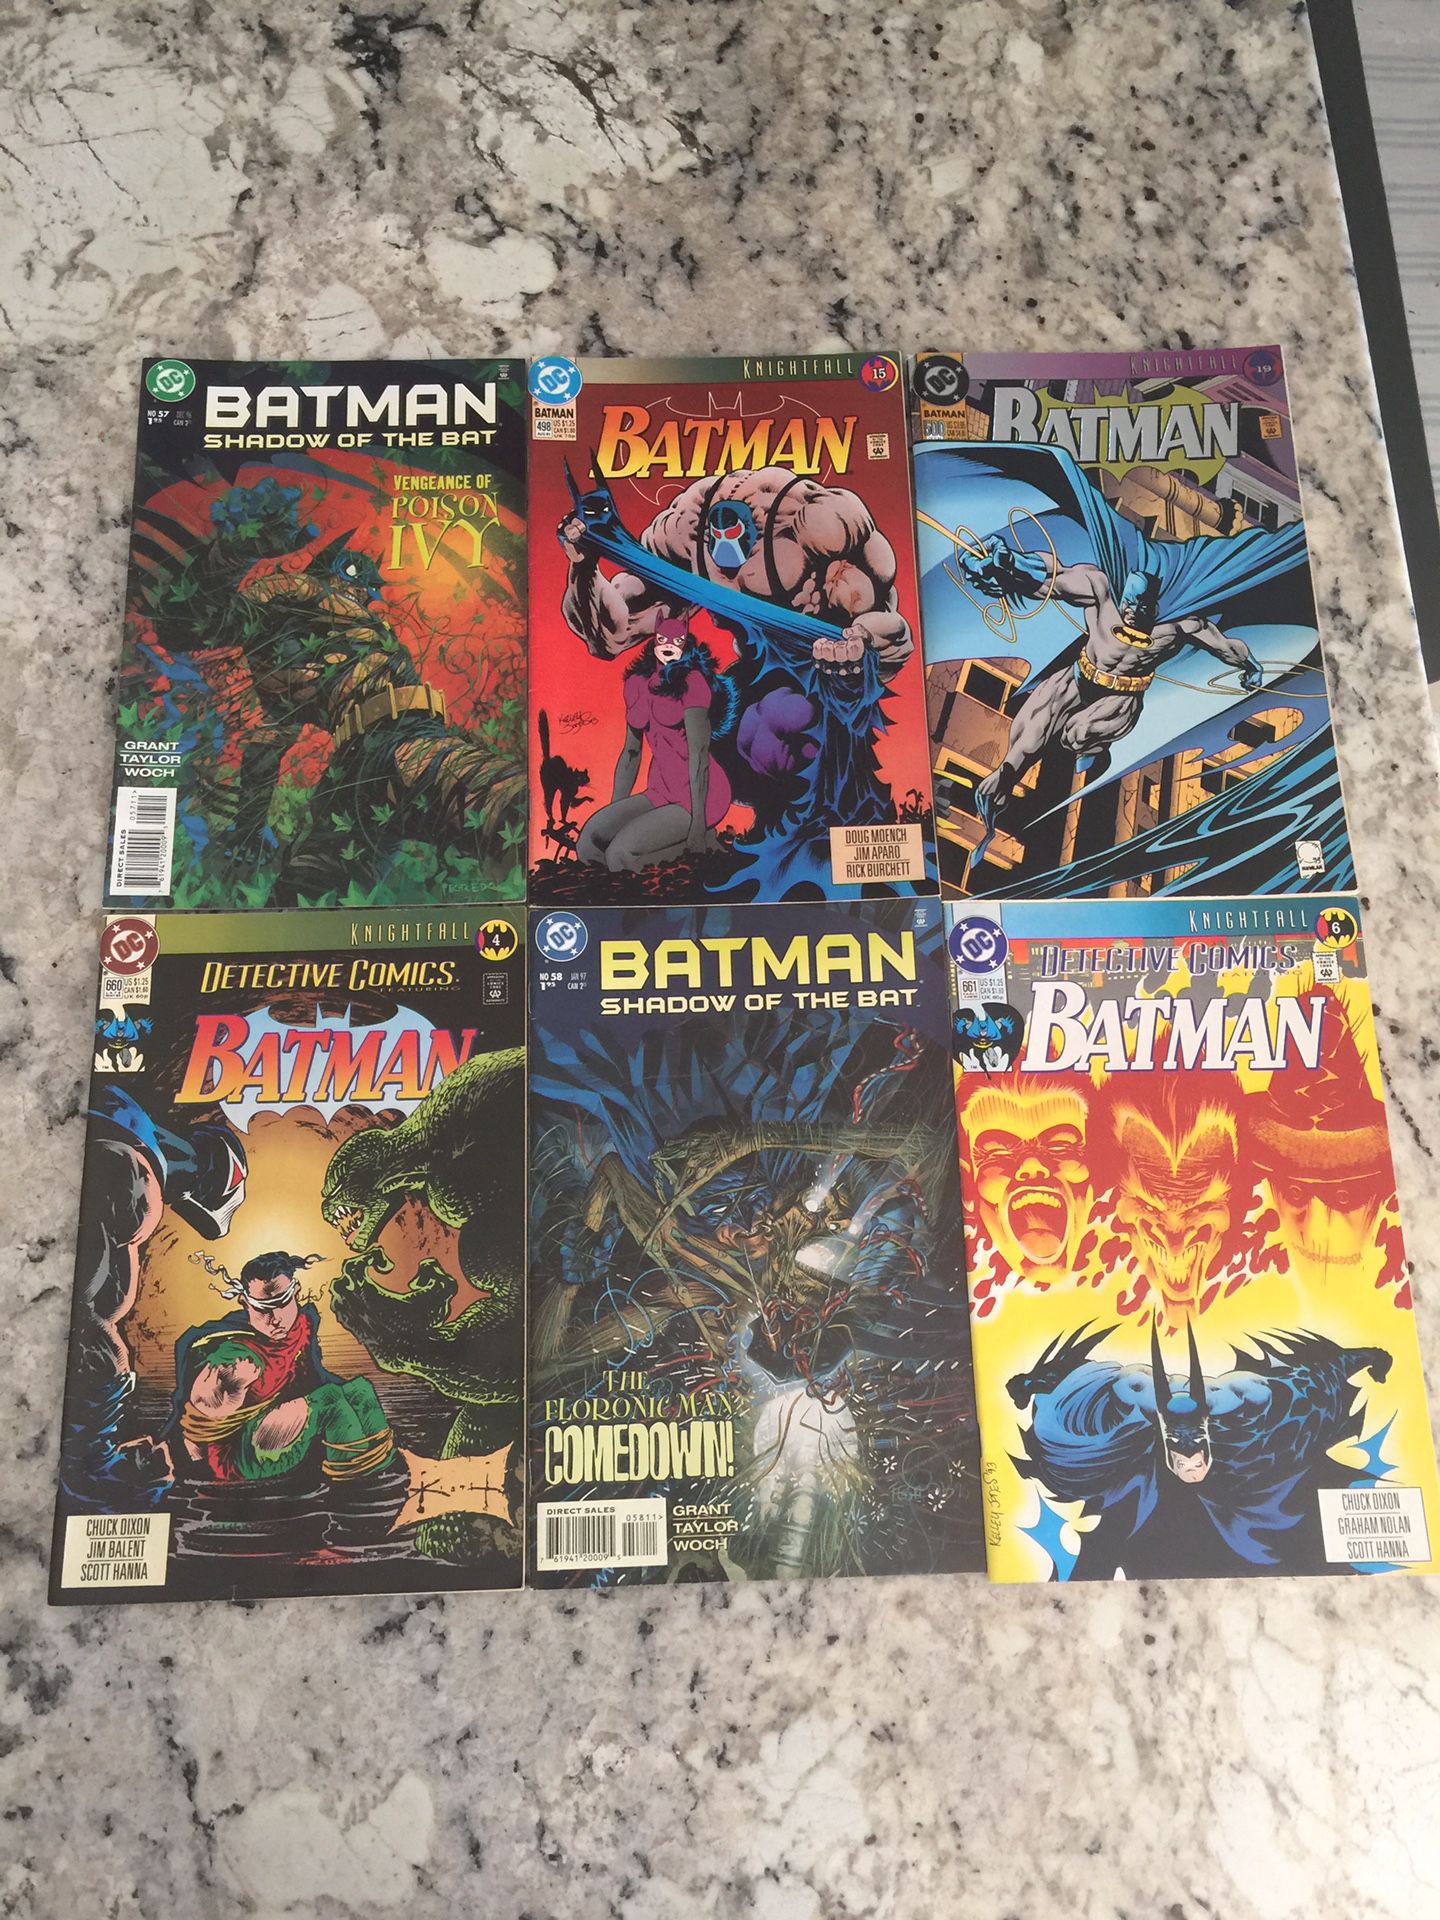 Free Batman DC Comic Books